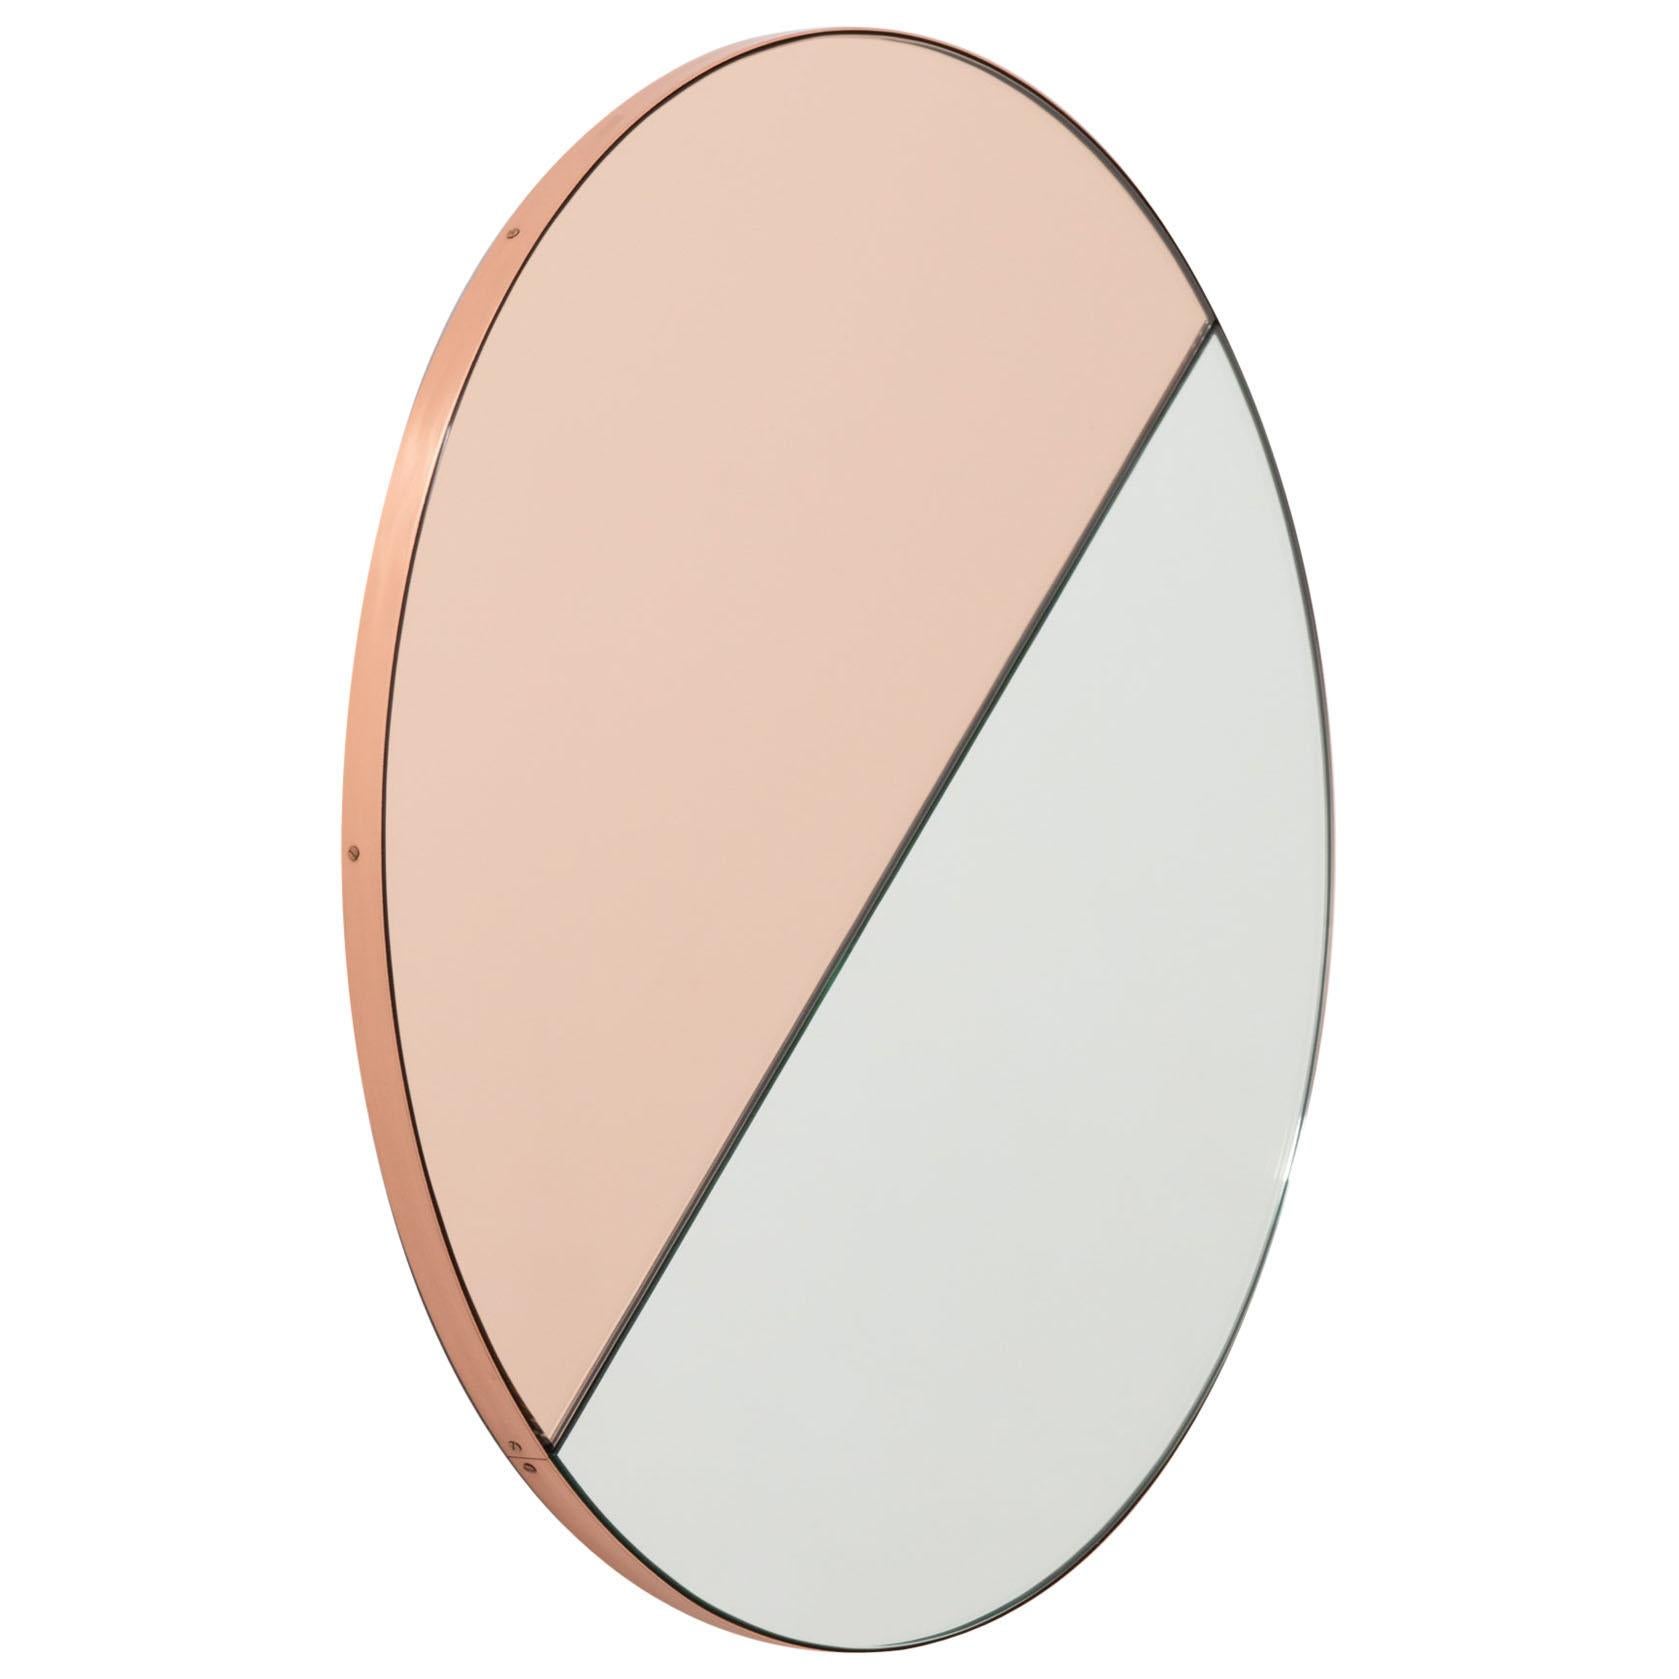 Orbis Dualis Miroir rond contemporain teinté d'or rose mixte, cadre cuivre, petit